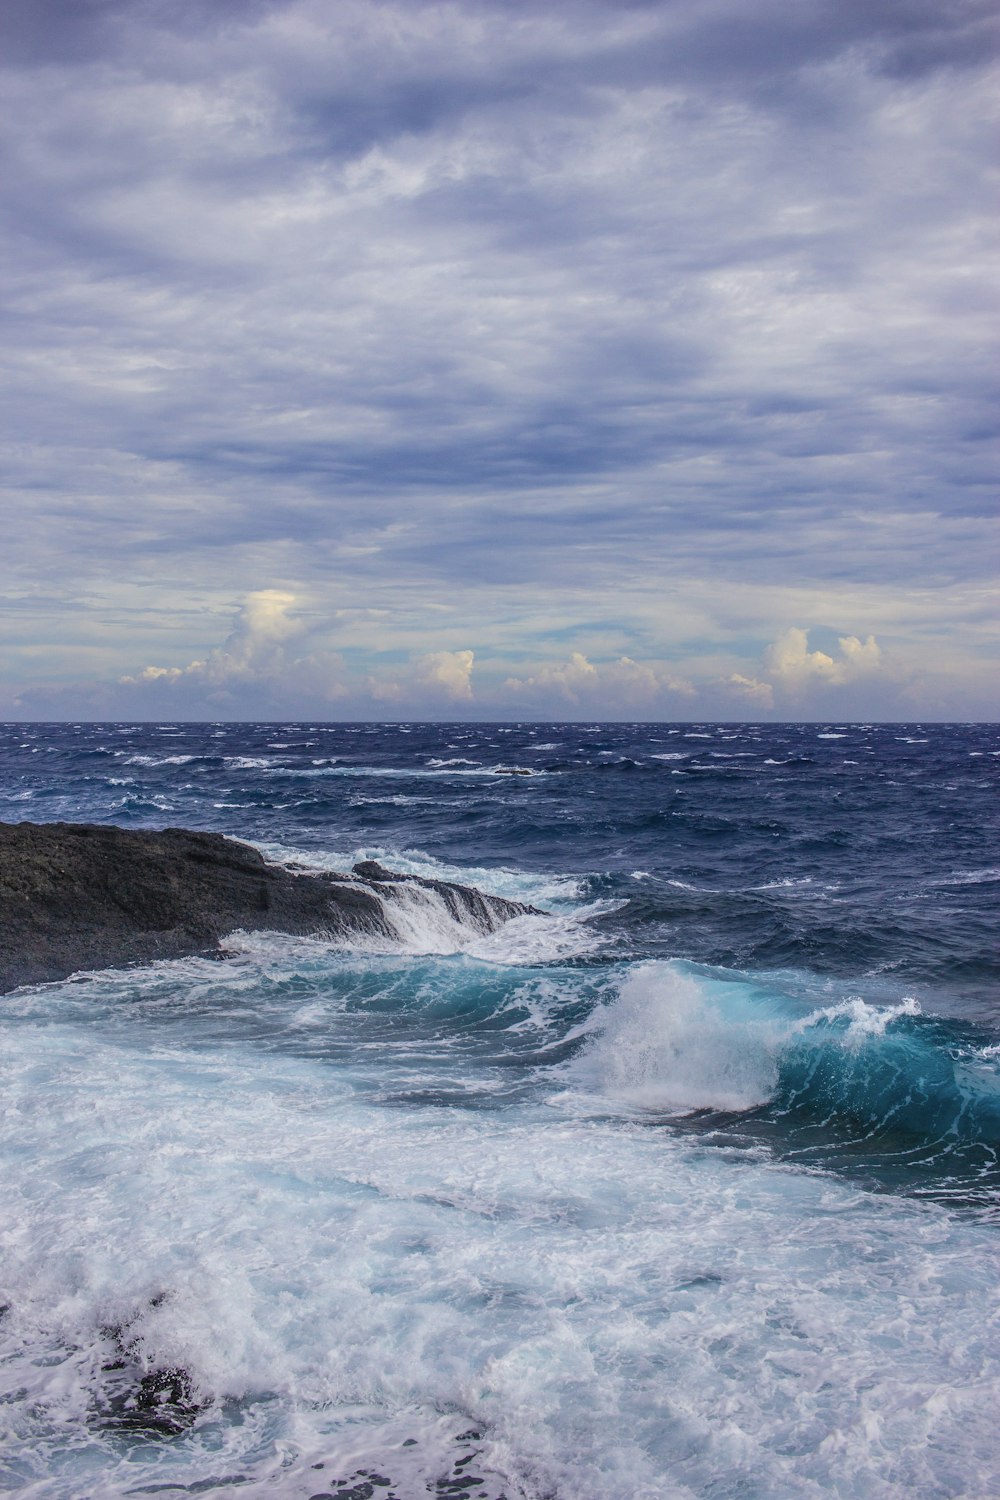 ondas do oceano quebrando em formação rochosa negra sob nuvens brancas durante o dia